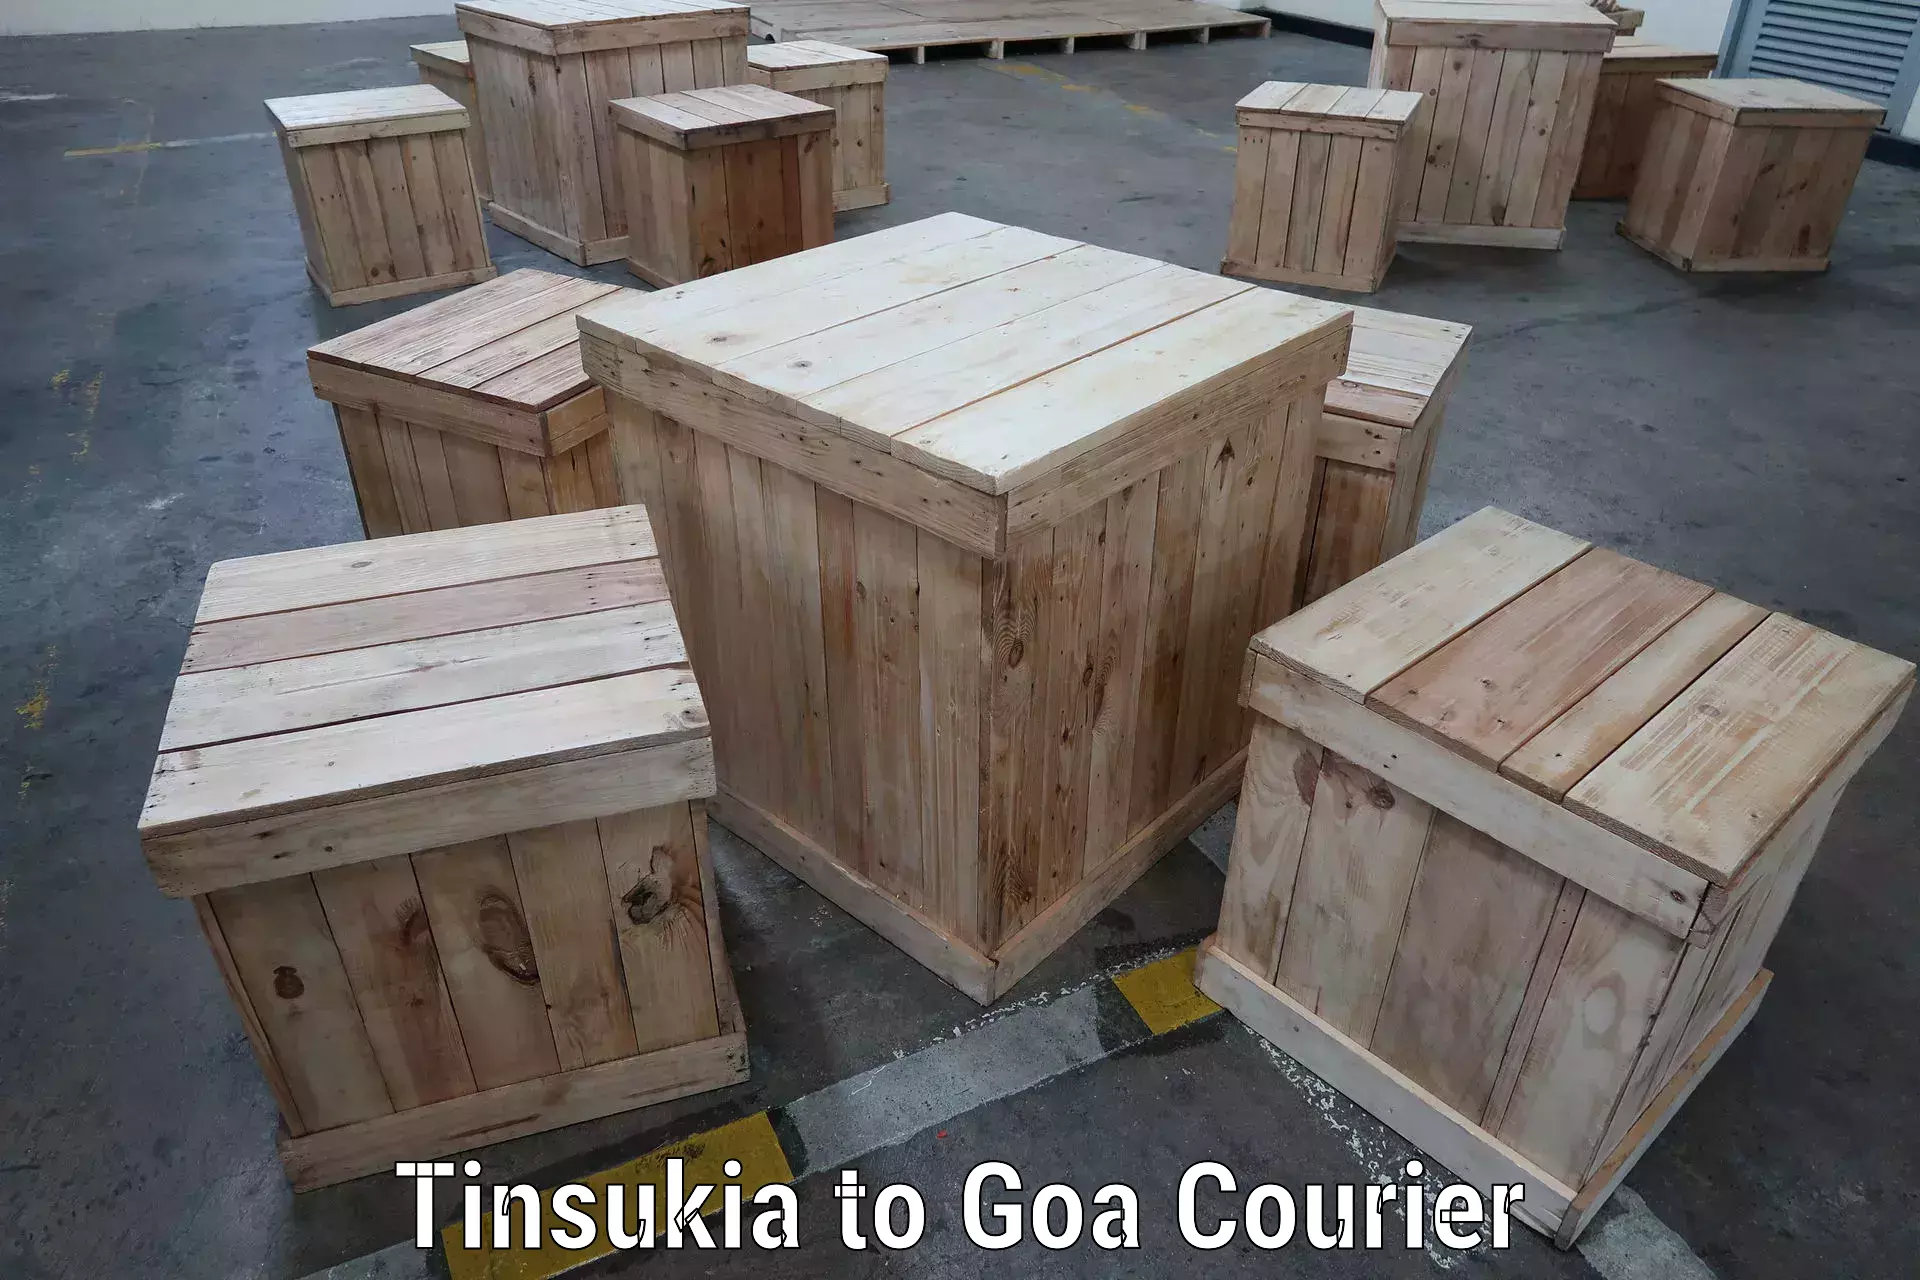 Multi-national courier services Tinsukia to Goa